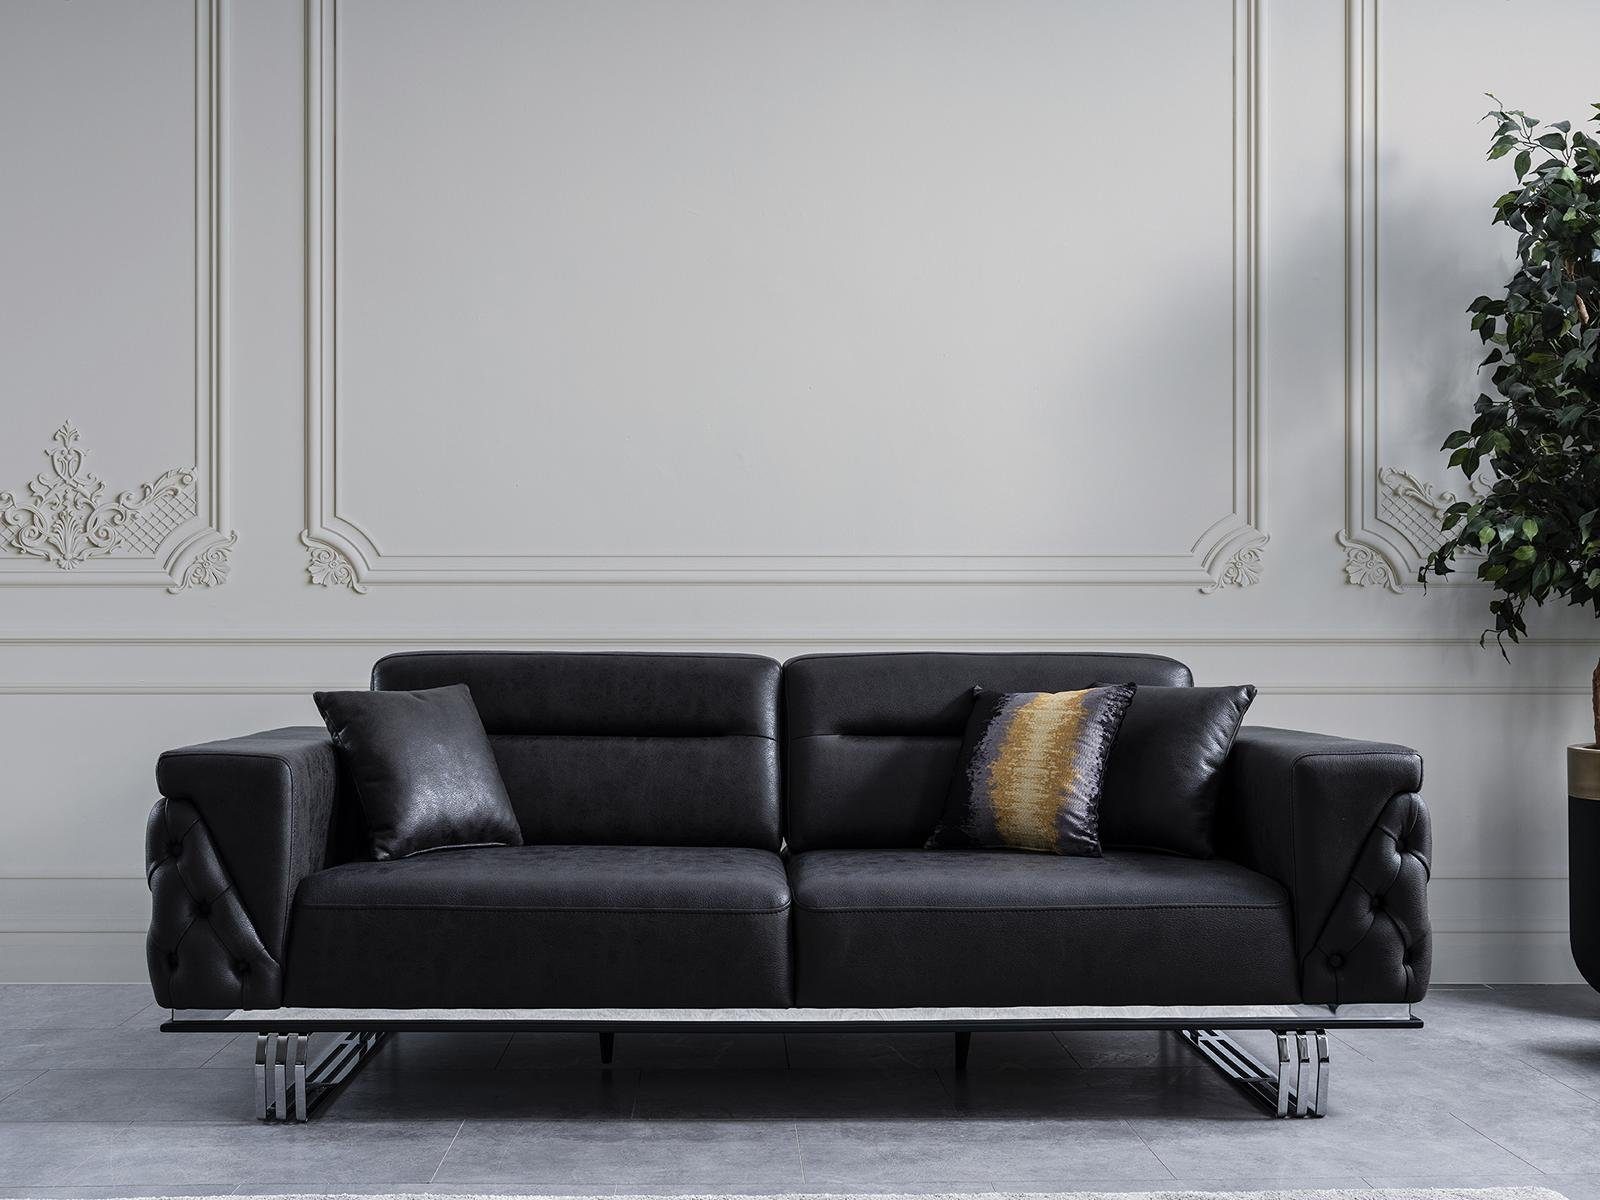 JVmoebel 4-Sitzer Wohnzimmer Sofa 4 Sitzer Luxus Designer Couch Polstersofas Modern